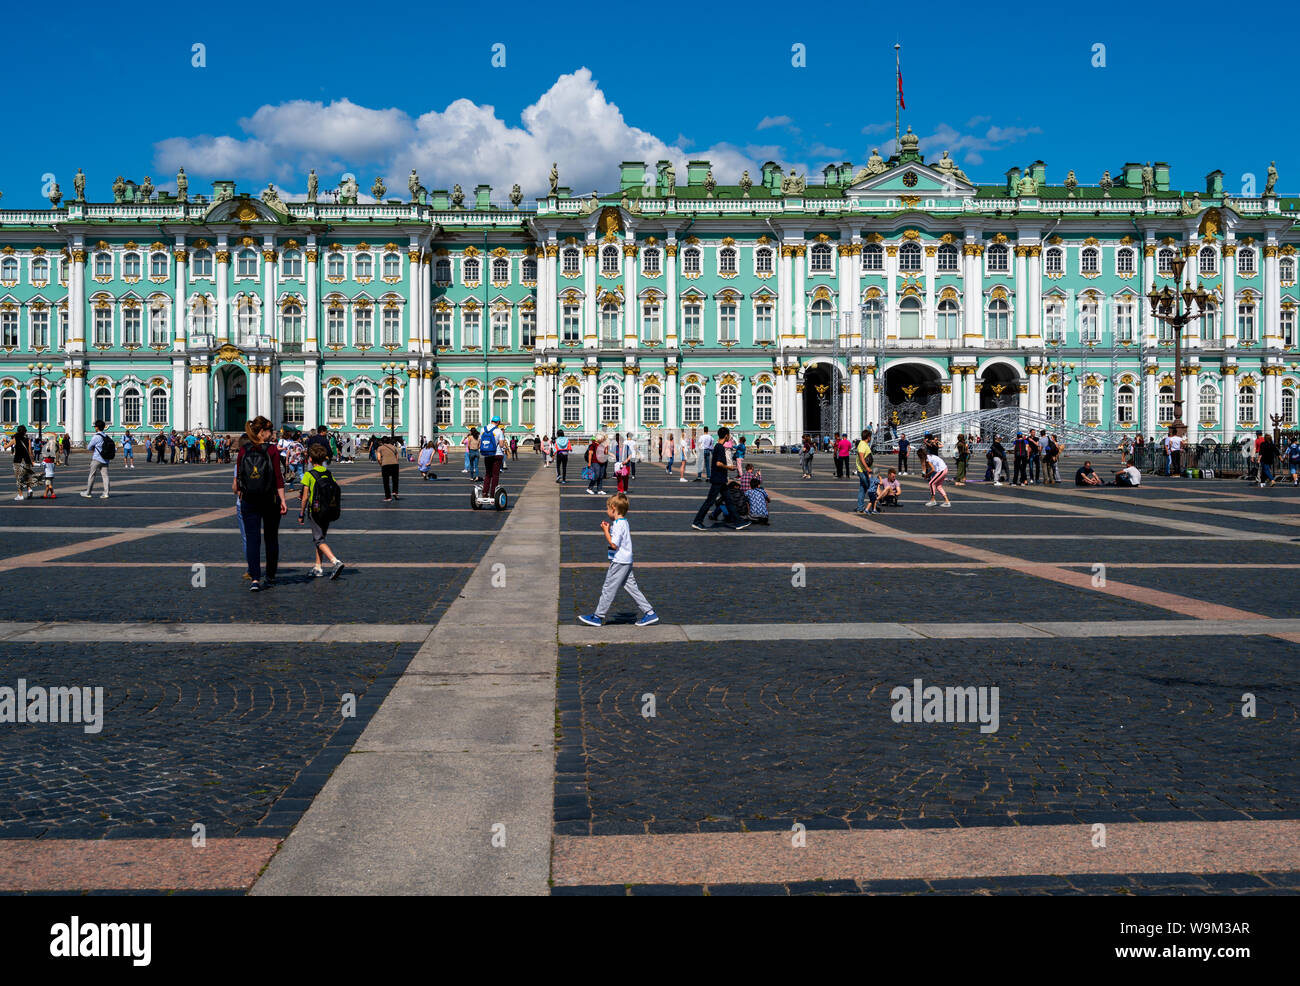 Saint-pétersbourg, Russie -- 21 juillet 2019. Photo de personnes qui se promènent sur la place devant le Palais d'hiver à Saint-Pétersbourg, en Russie. Banque D'Images